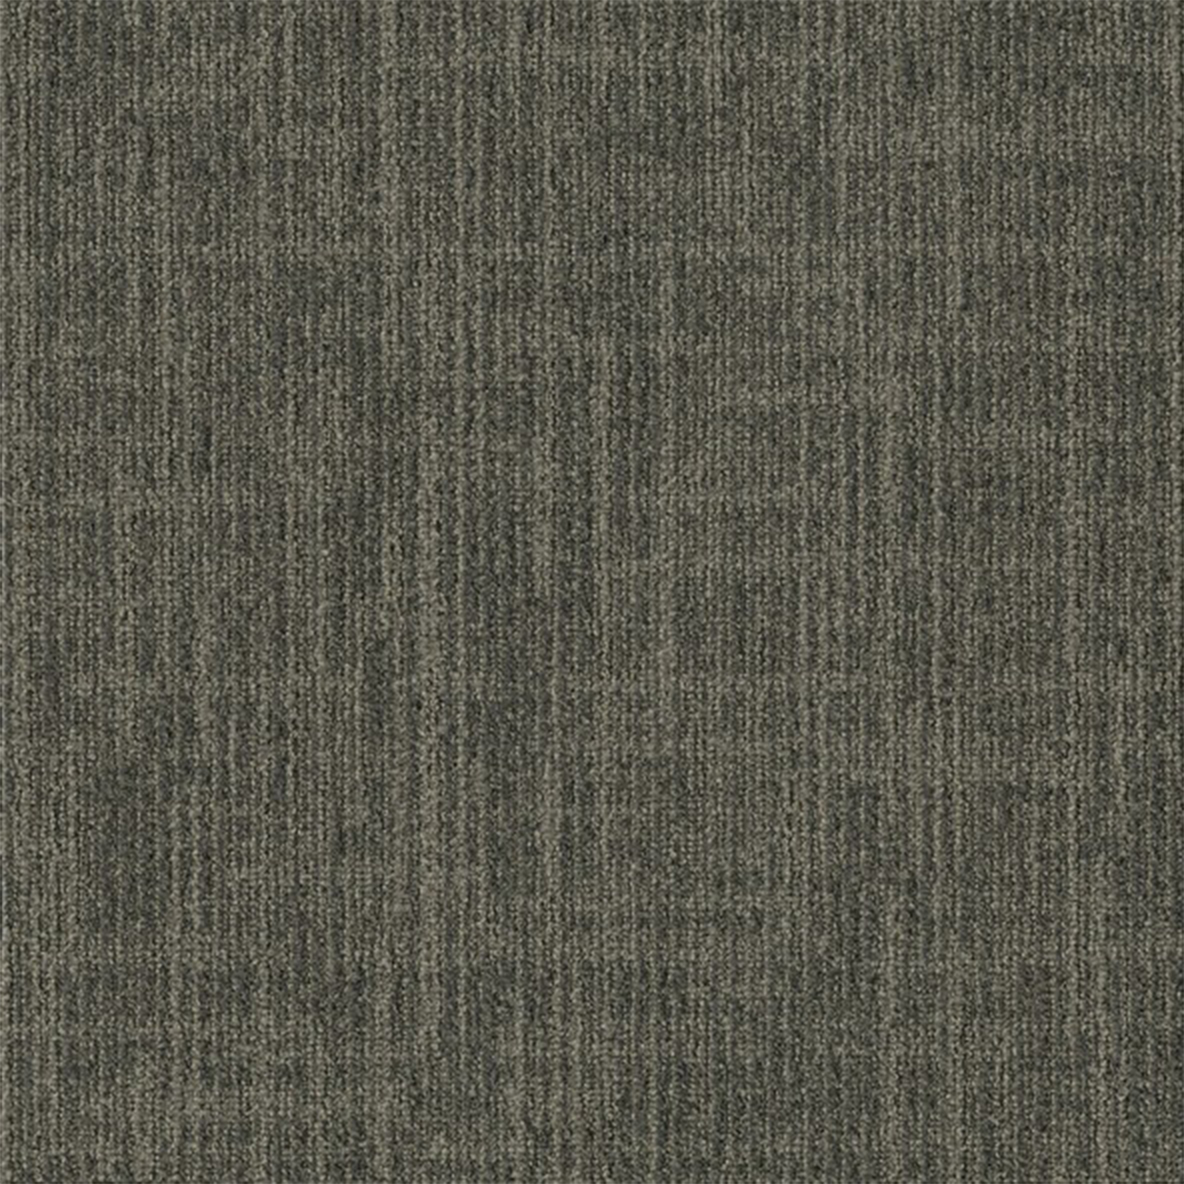 Fossil color close up Outer Banks Commercial Carpet Tile .32 Inch x 50x50 cm per Tile